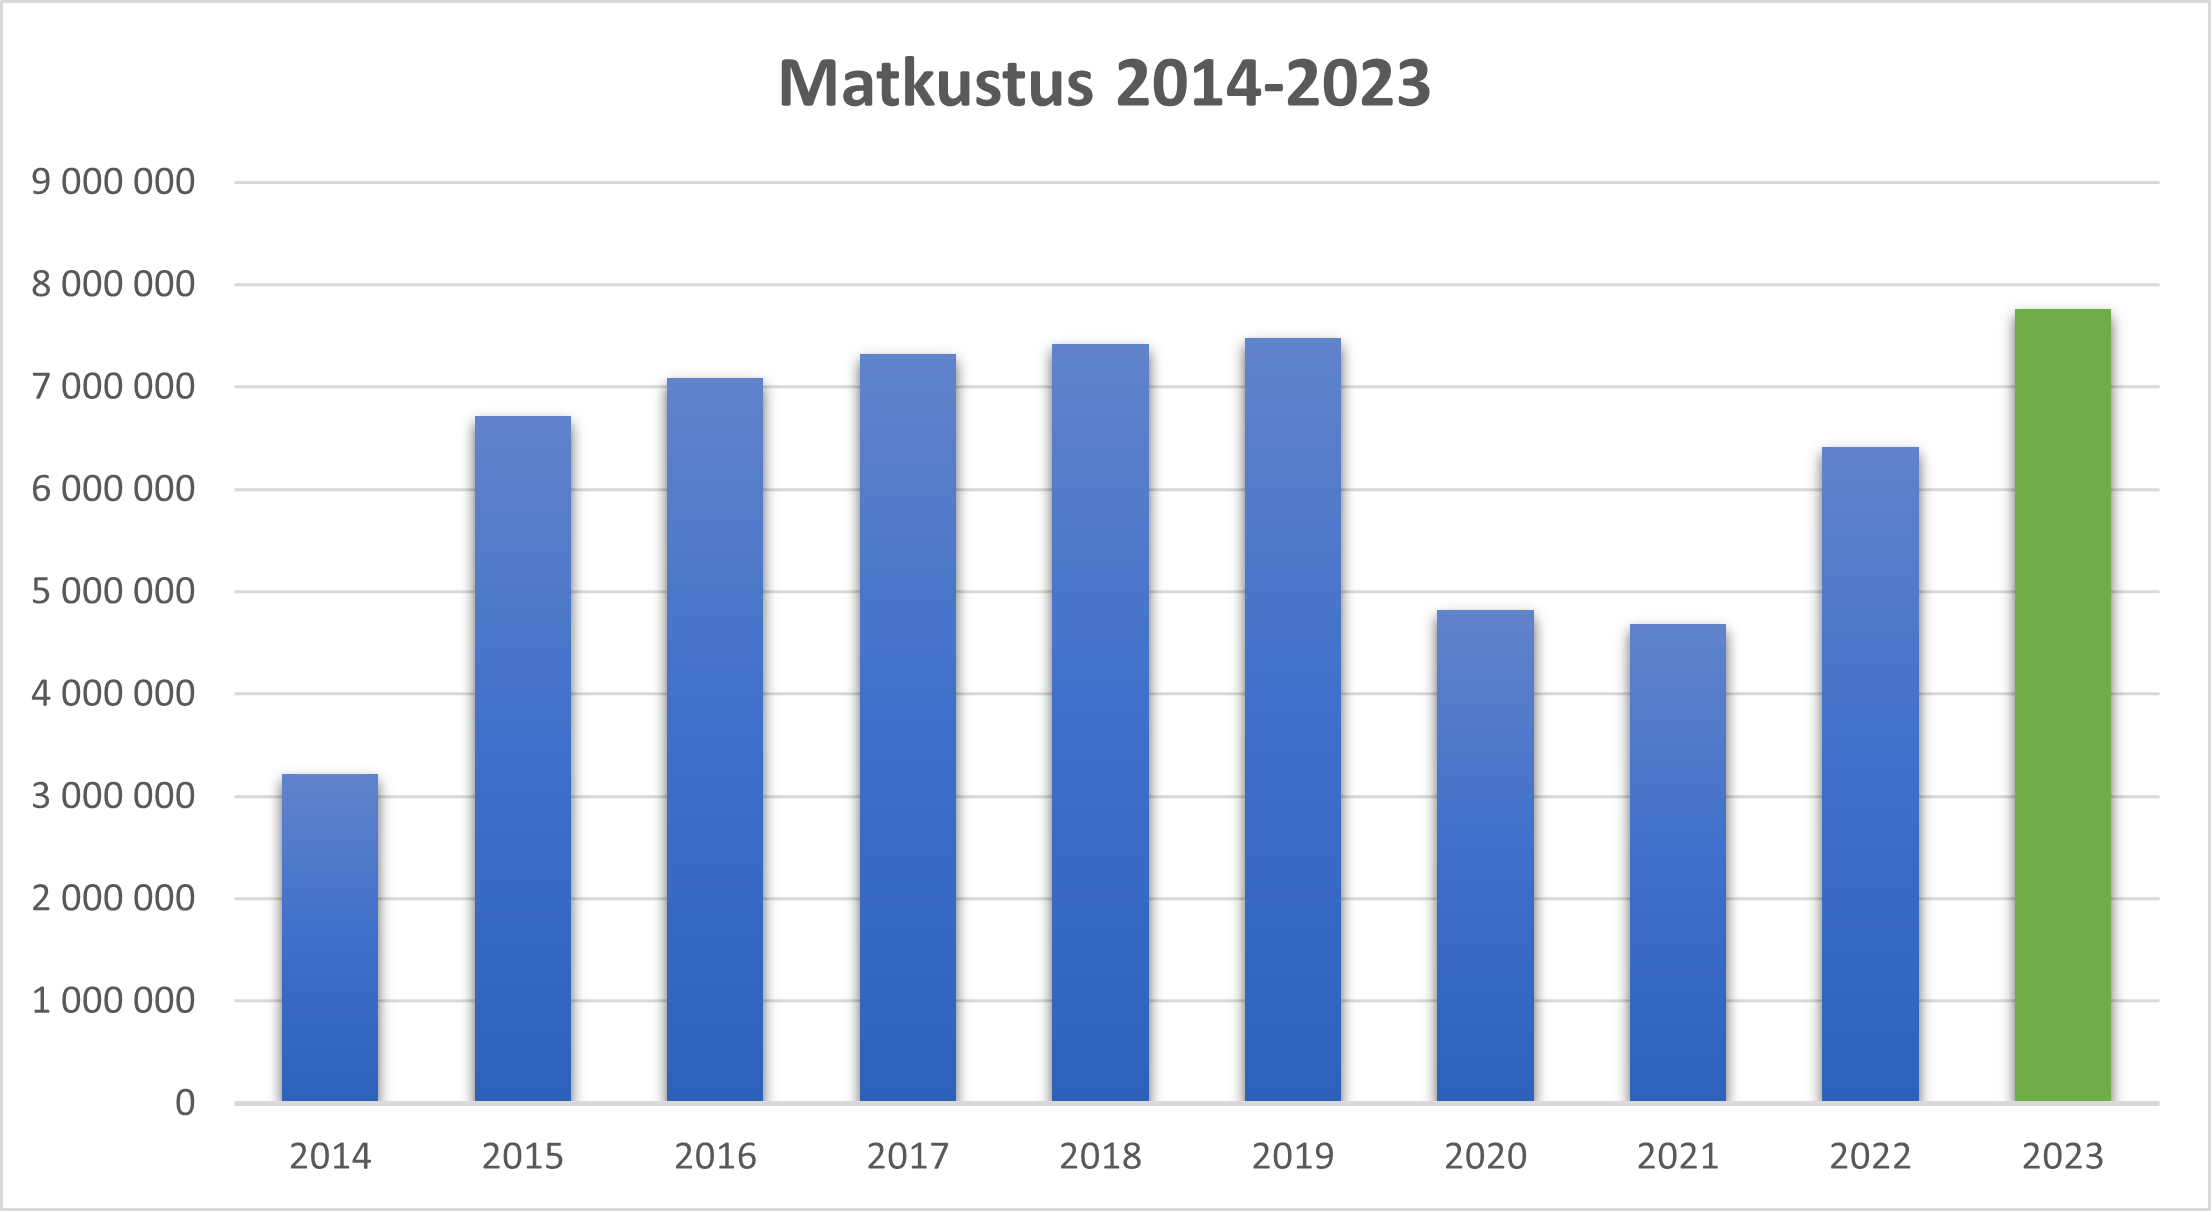 Matkustusmäärät pylväskaaviona 2014-2023.